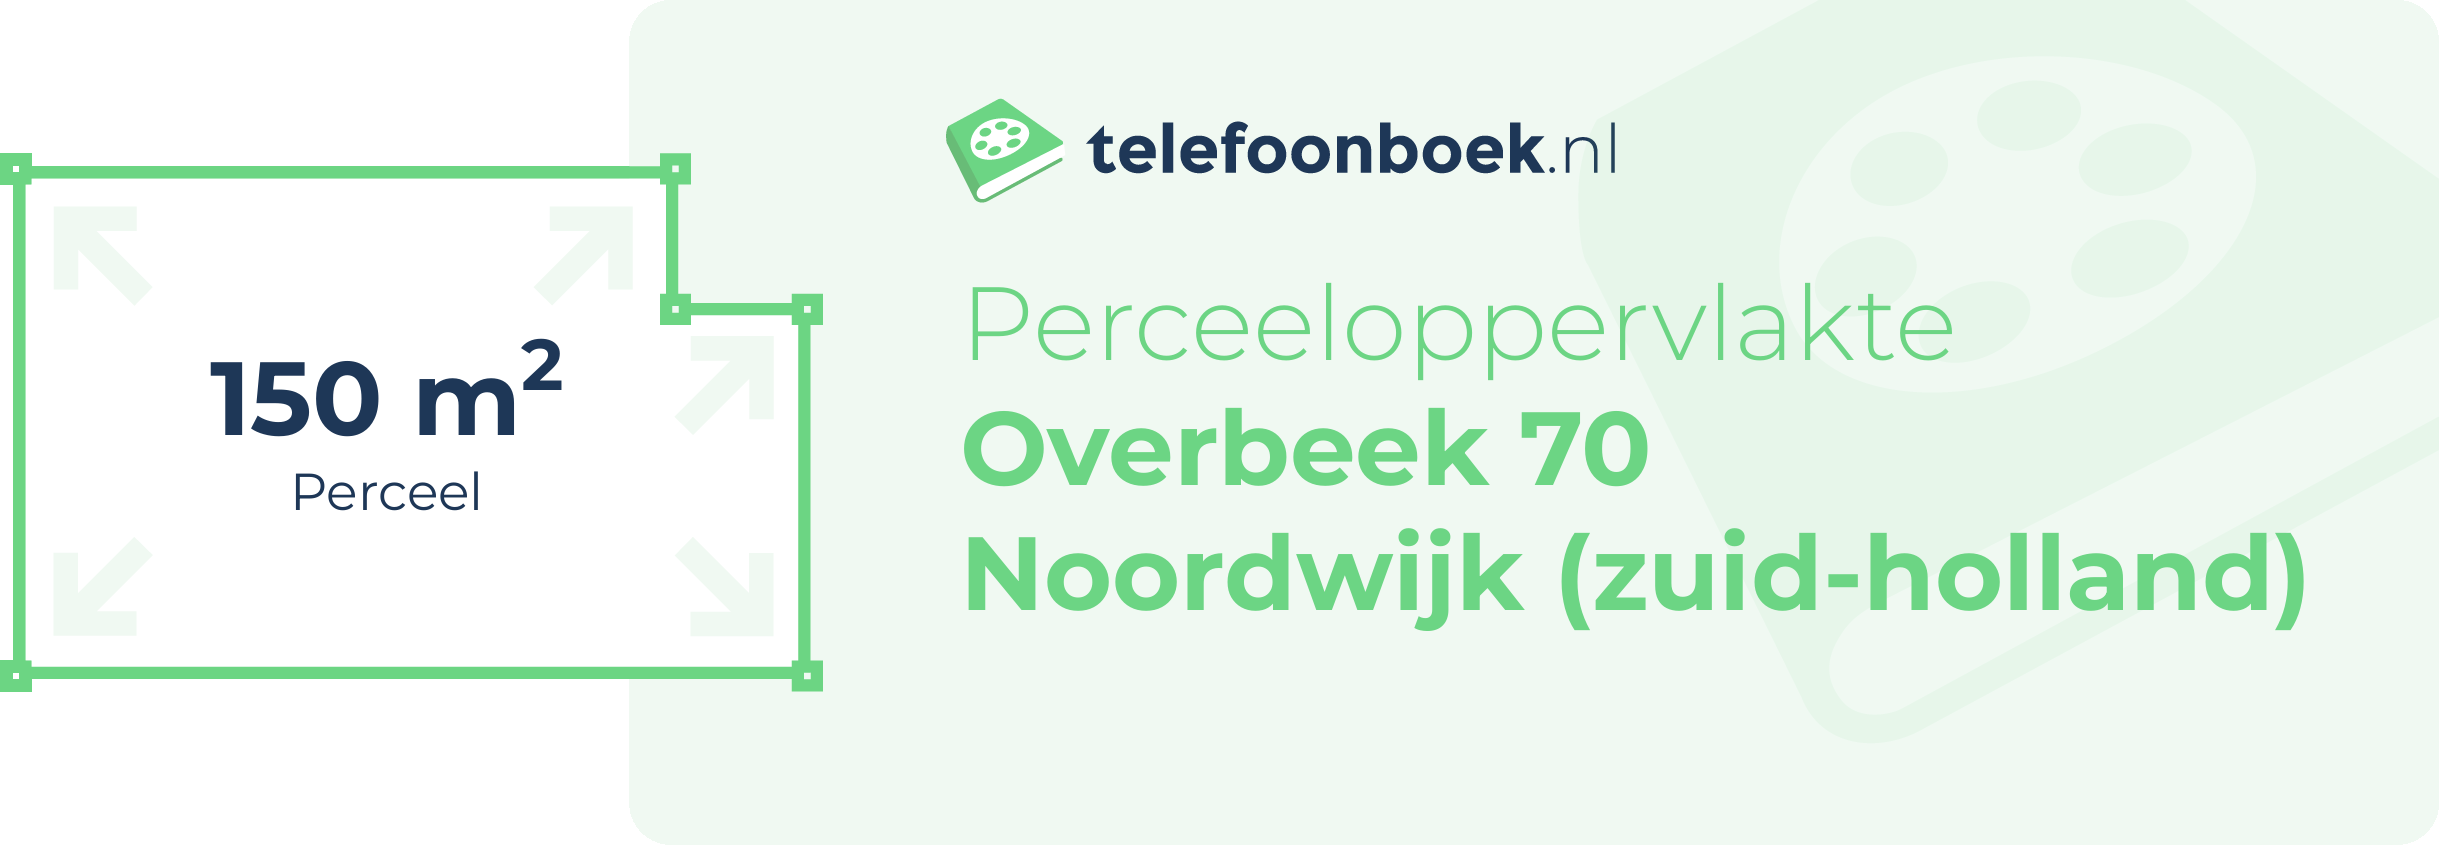 Perceeloppervlakte Overbeek 70 Noordwijk (Zuid-Holland)